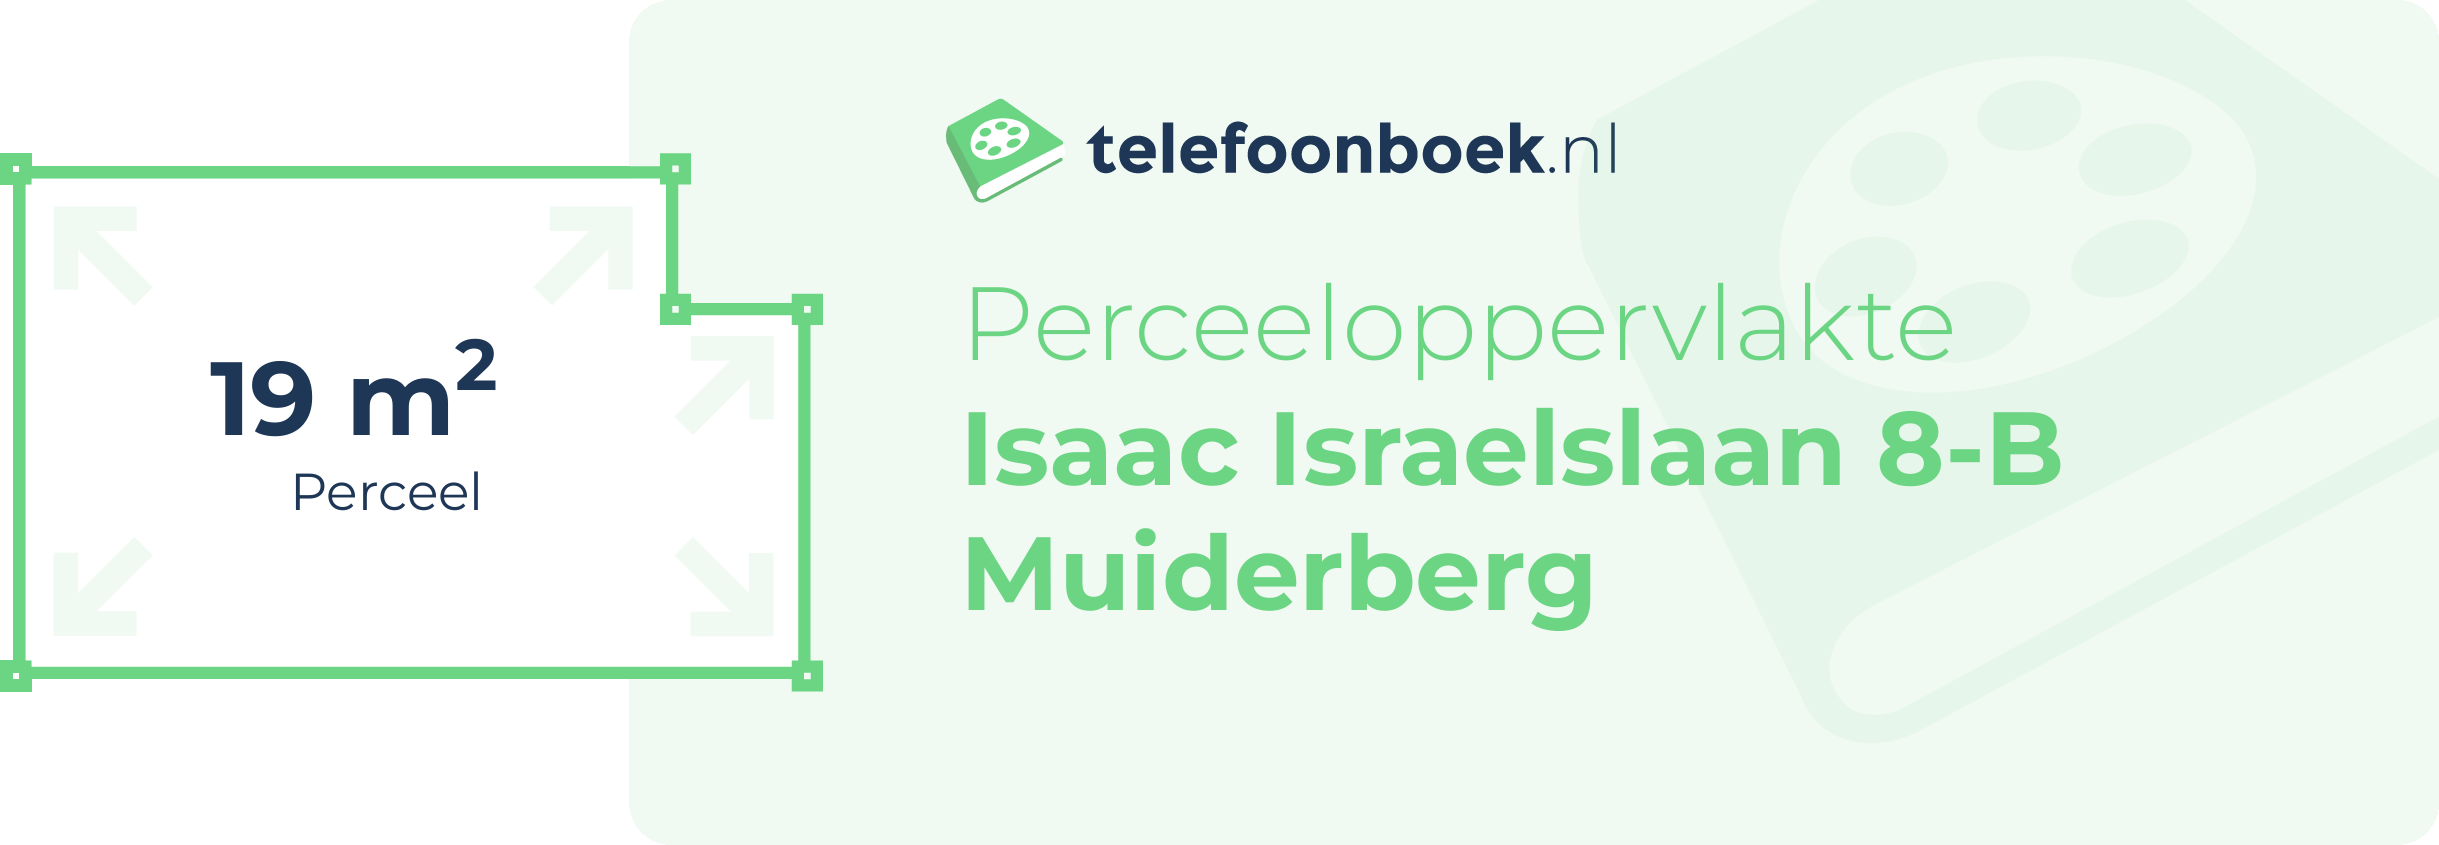 Perceeloppervlakte Isaac Israelslaan 8-B Muiderberg